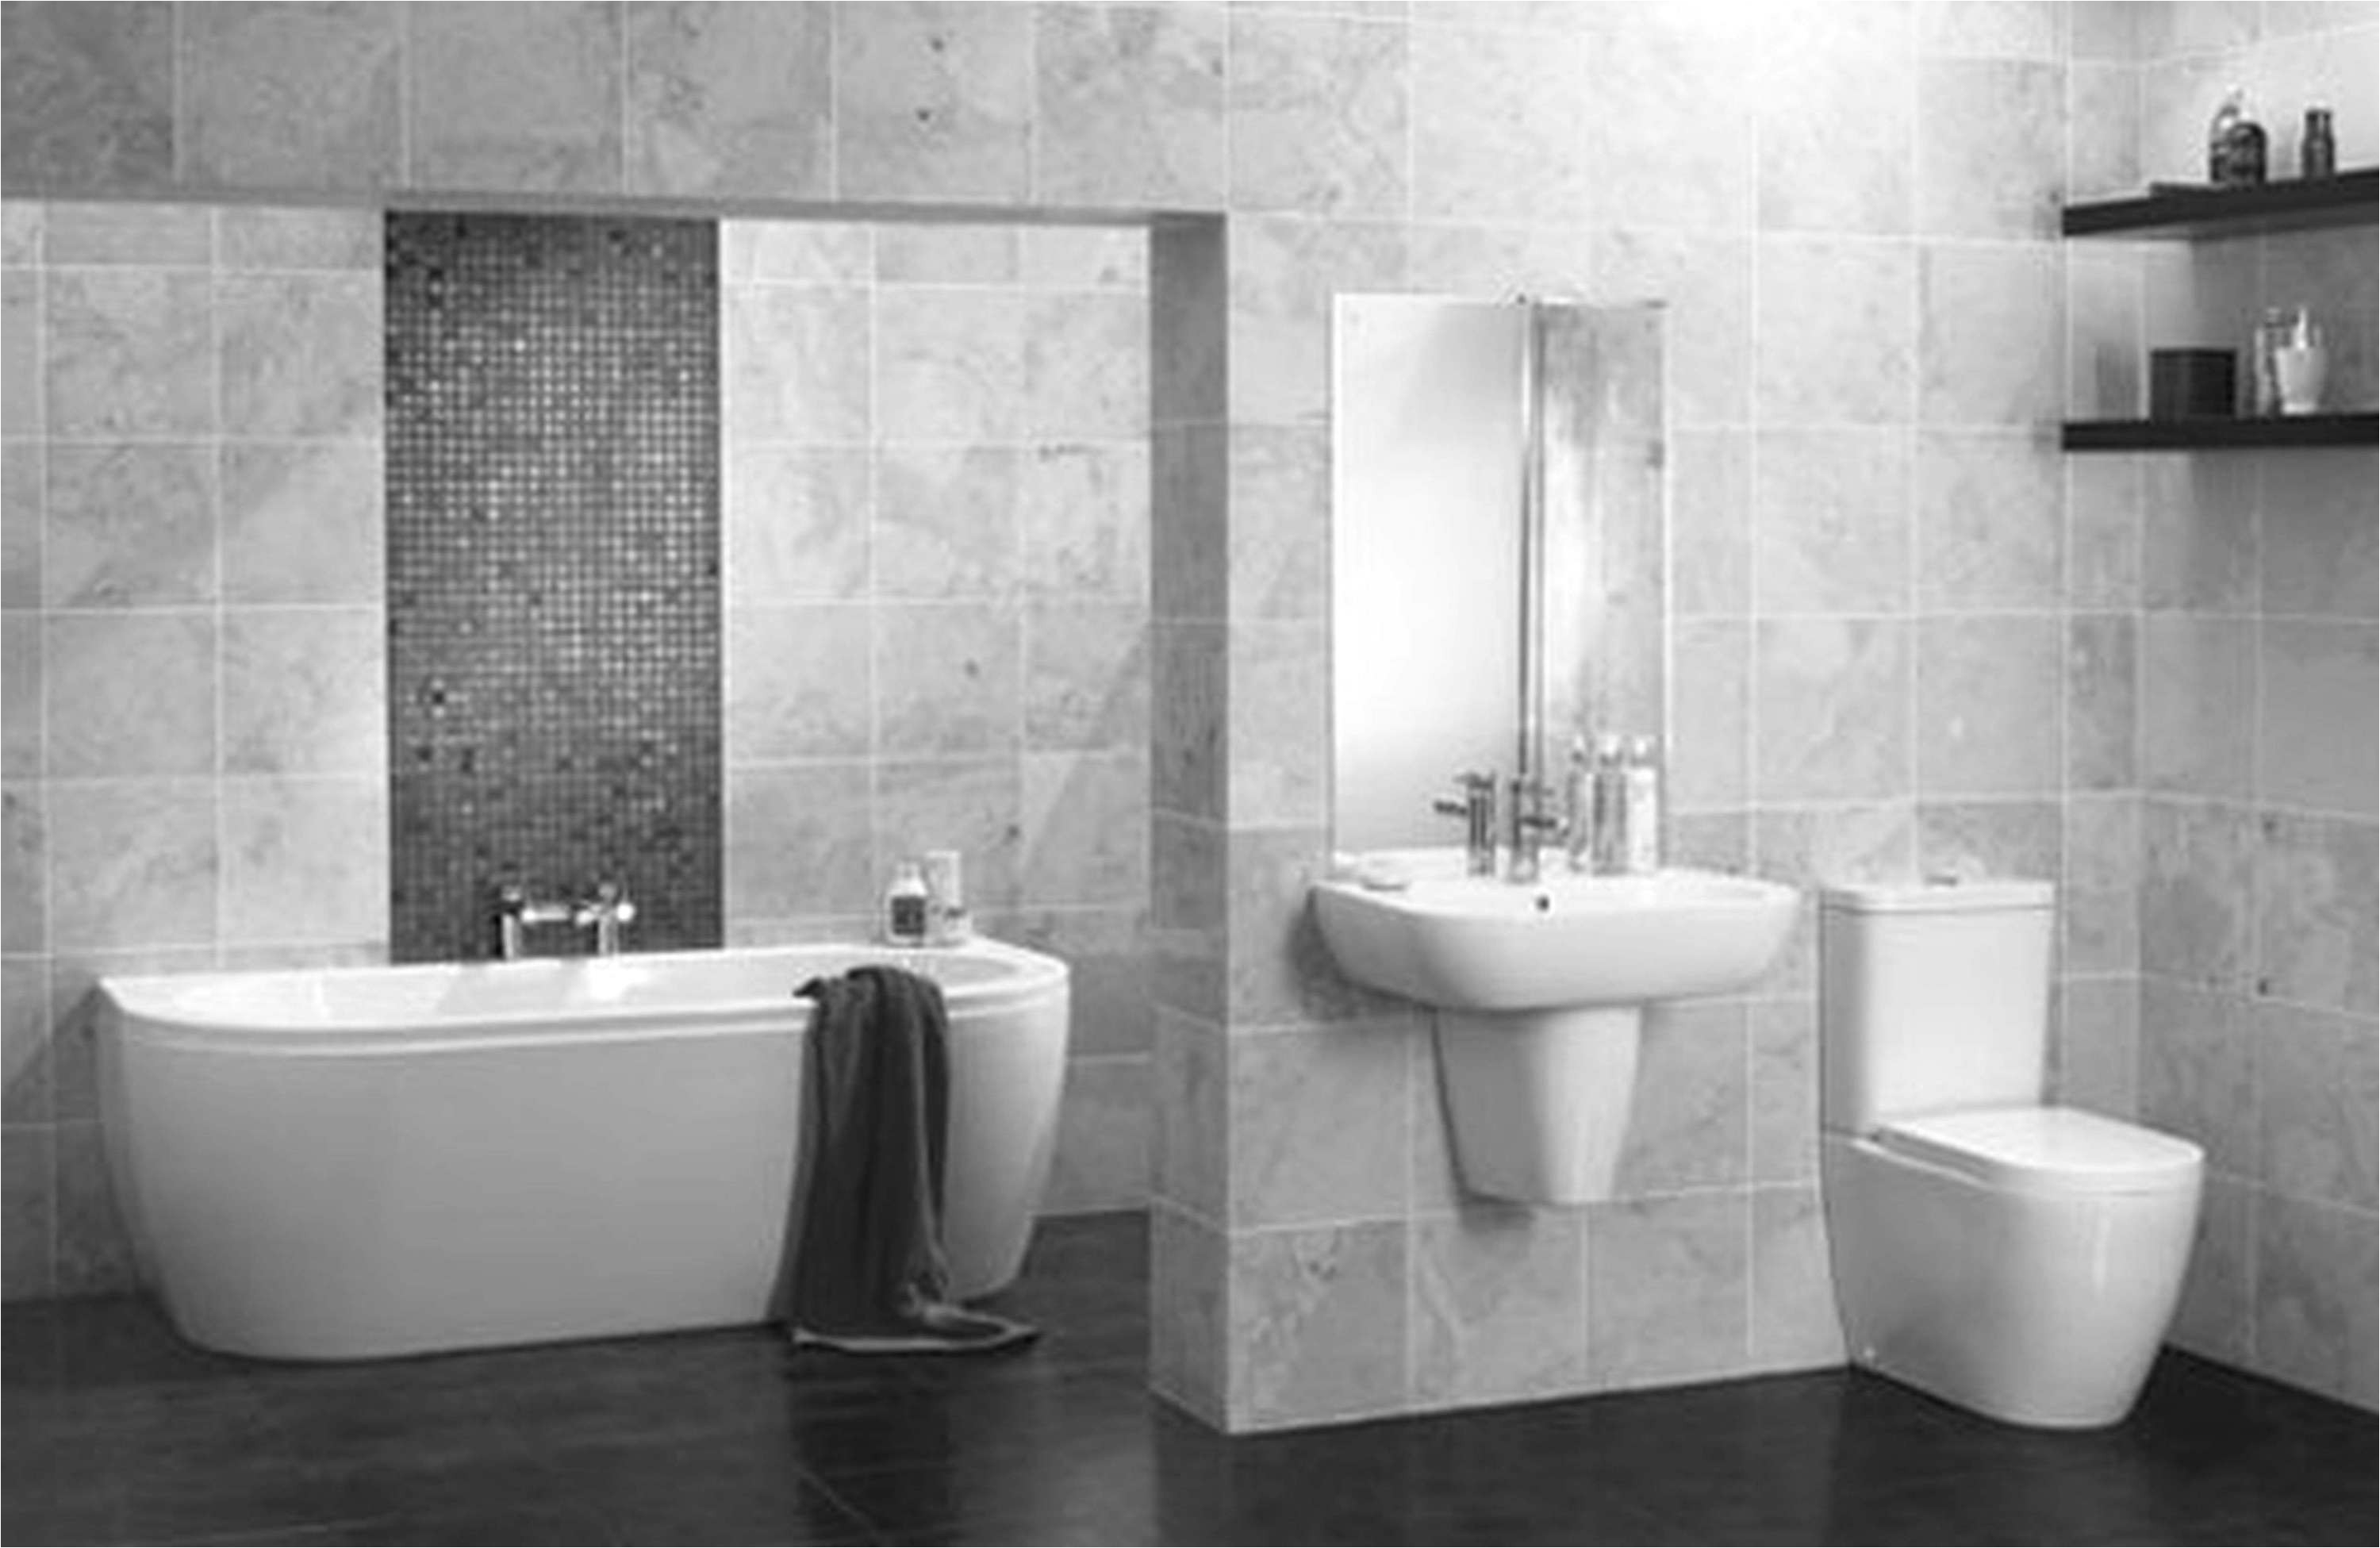 Classy Unique Bathroom Picture Ideas Lovely Tag toilet Ideas 0d Best Design